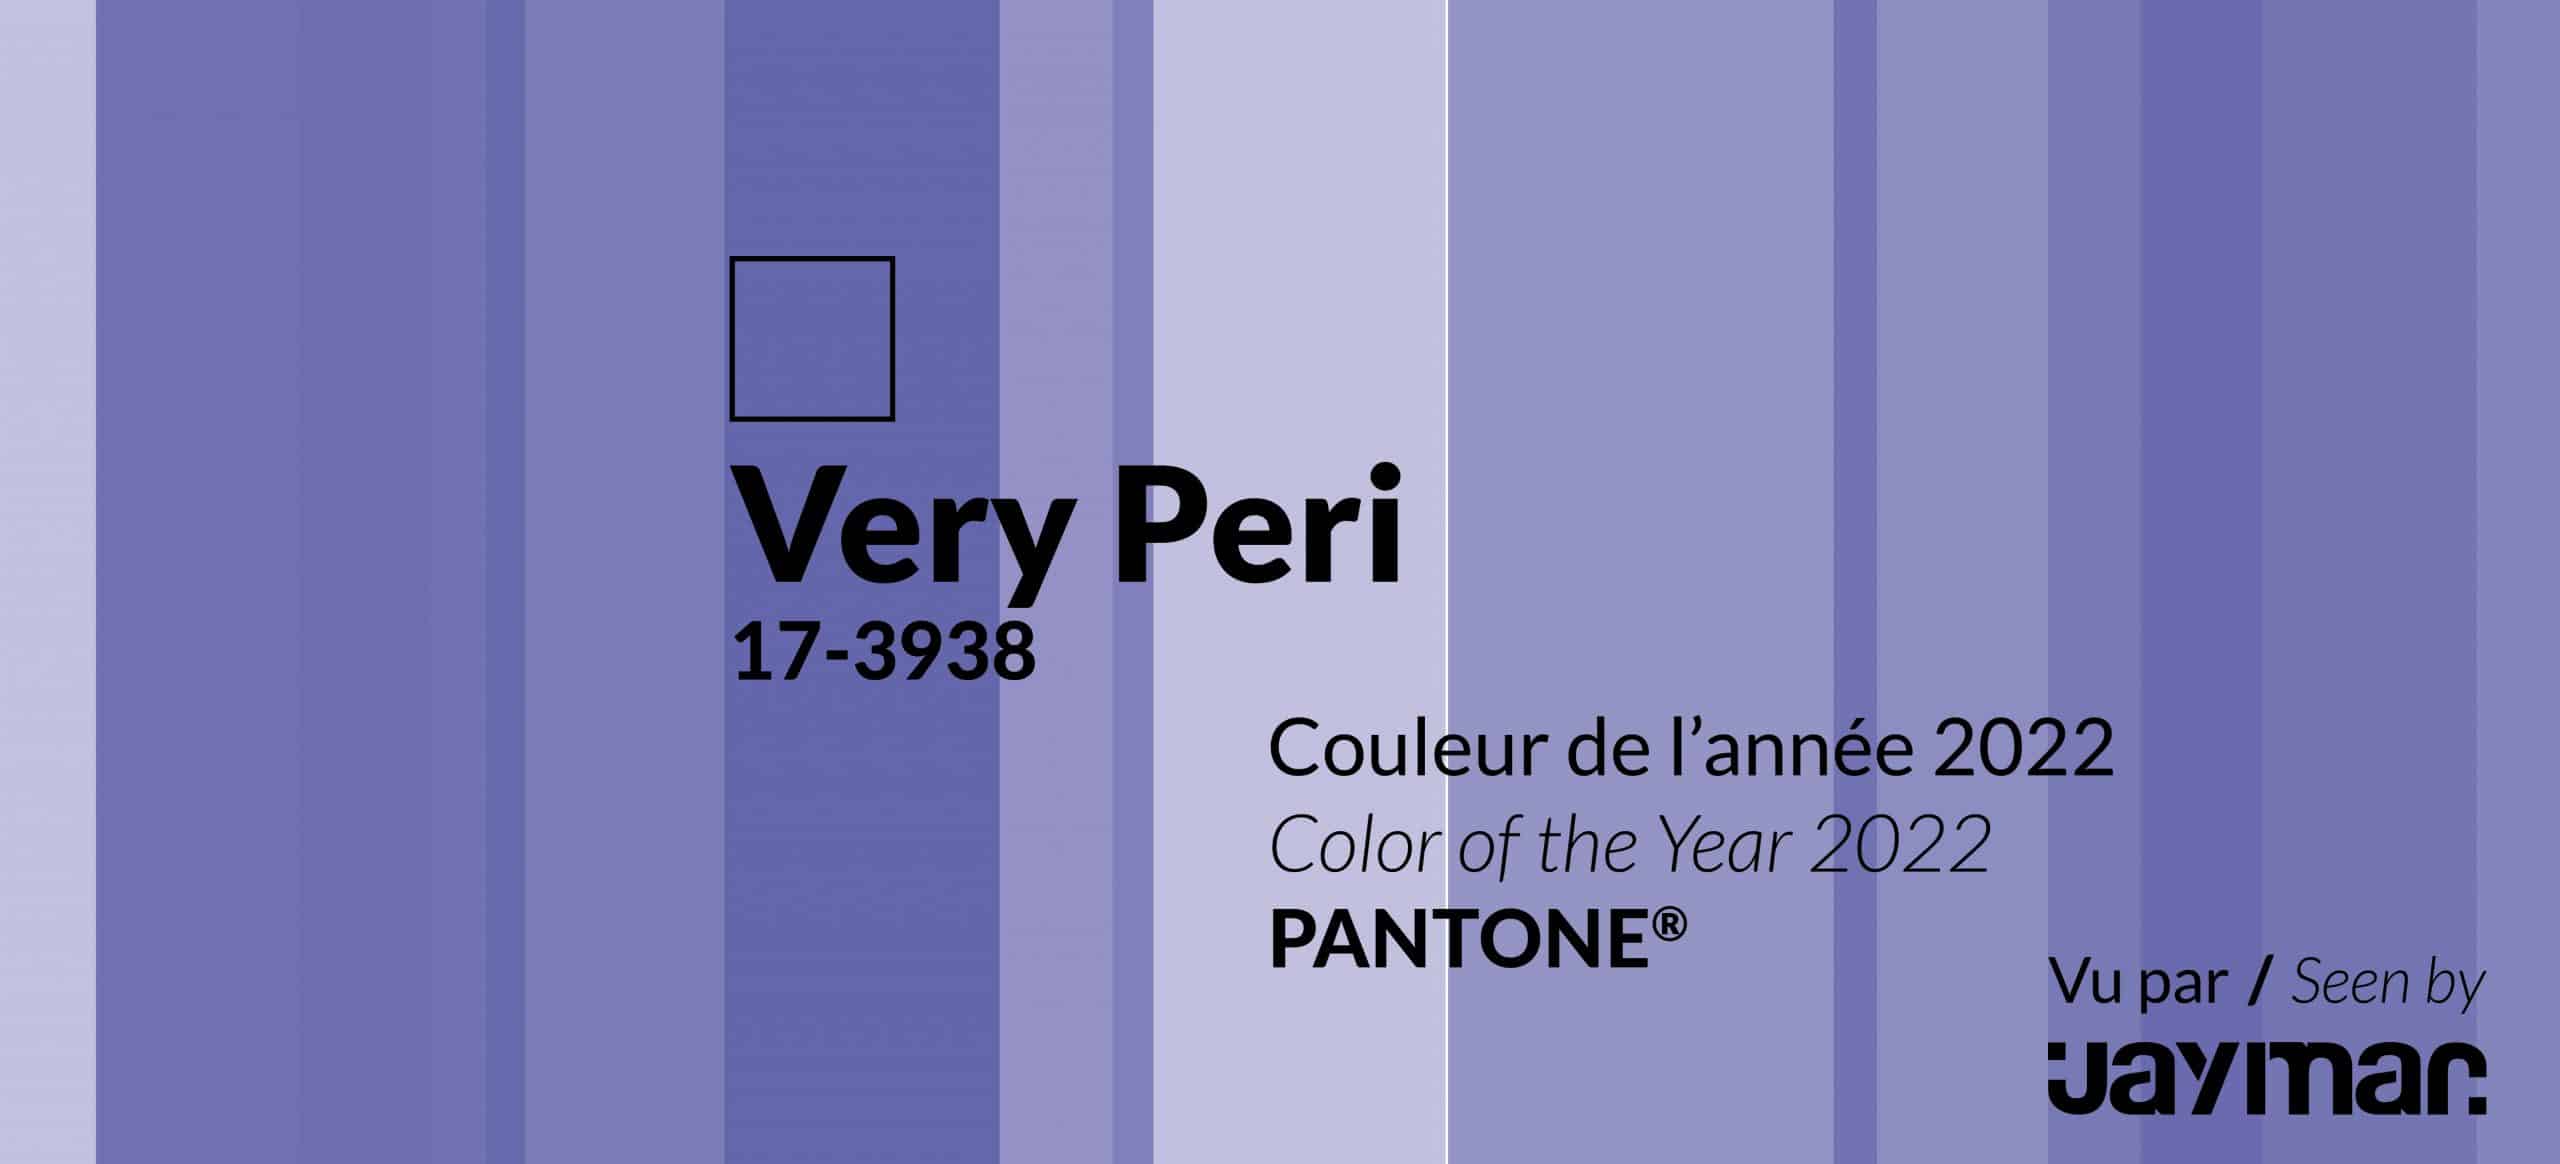 Very peri pantone color 2022 Furniture